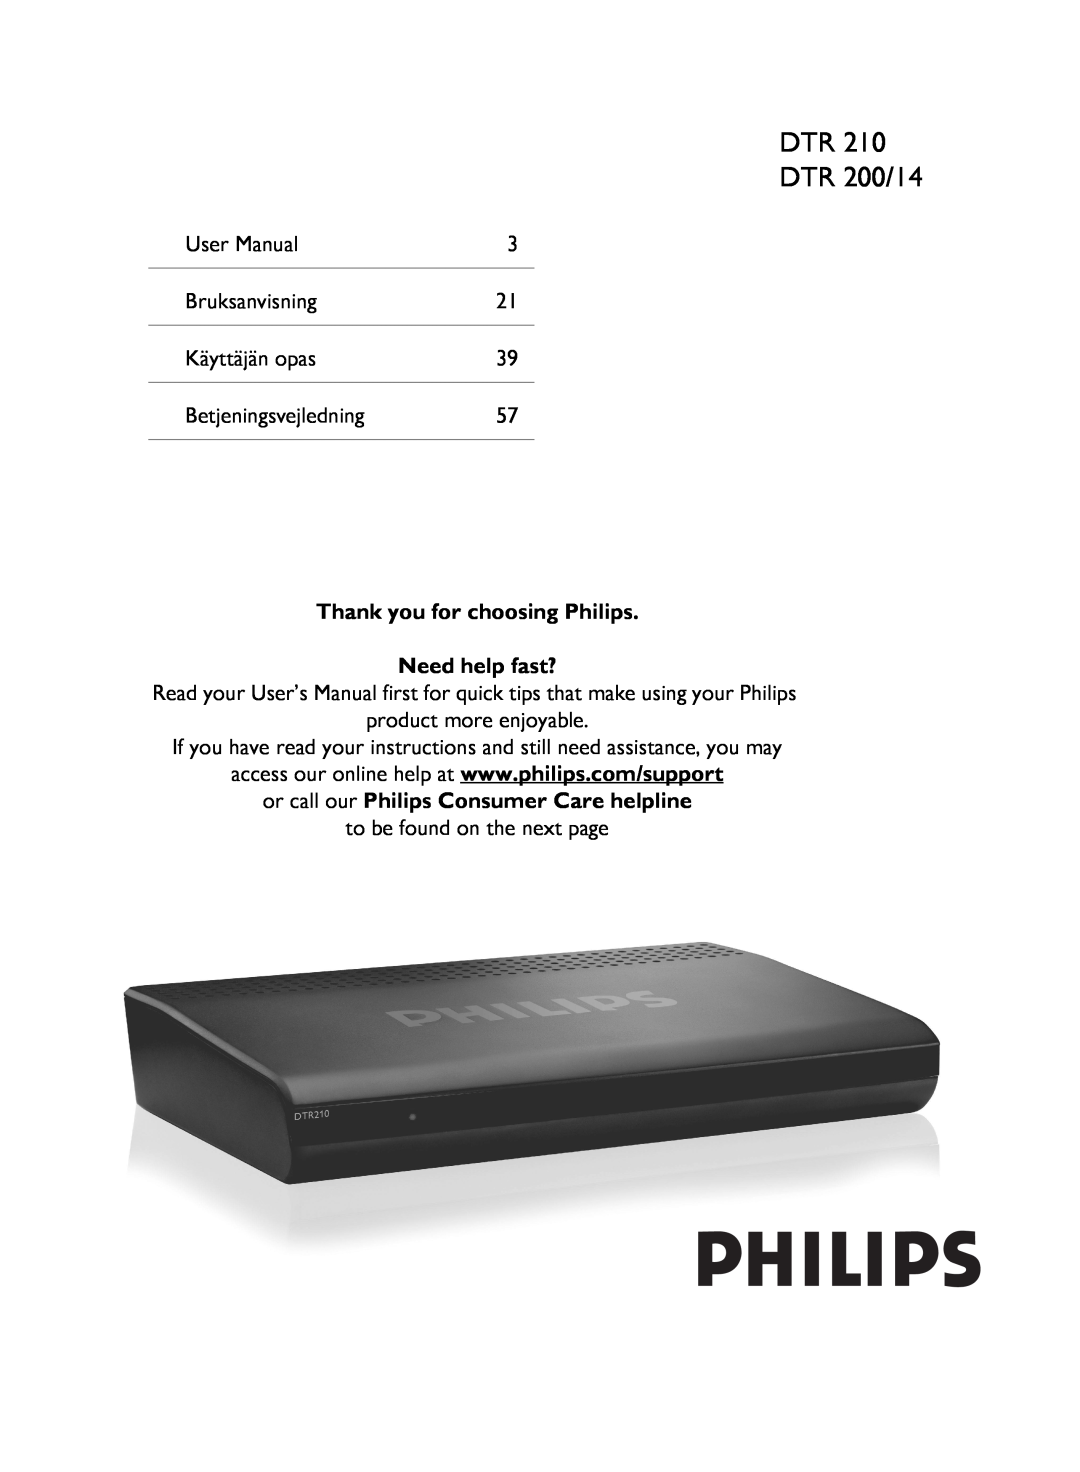 Philips 210 user manual DTR DTR 200/14, User Manual, Bruksanvisning, Käyttäjän opas, Betjeningsvejledning 